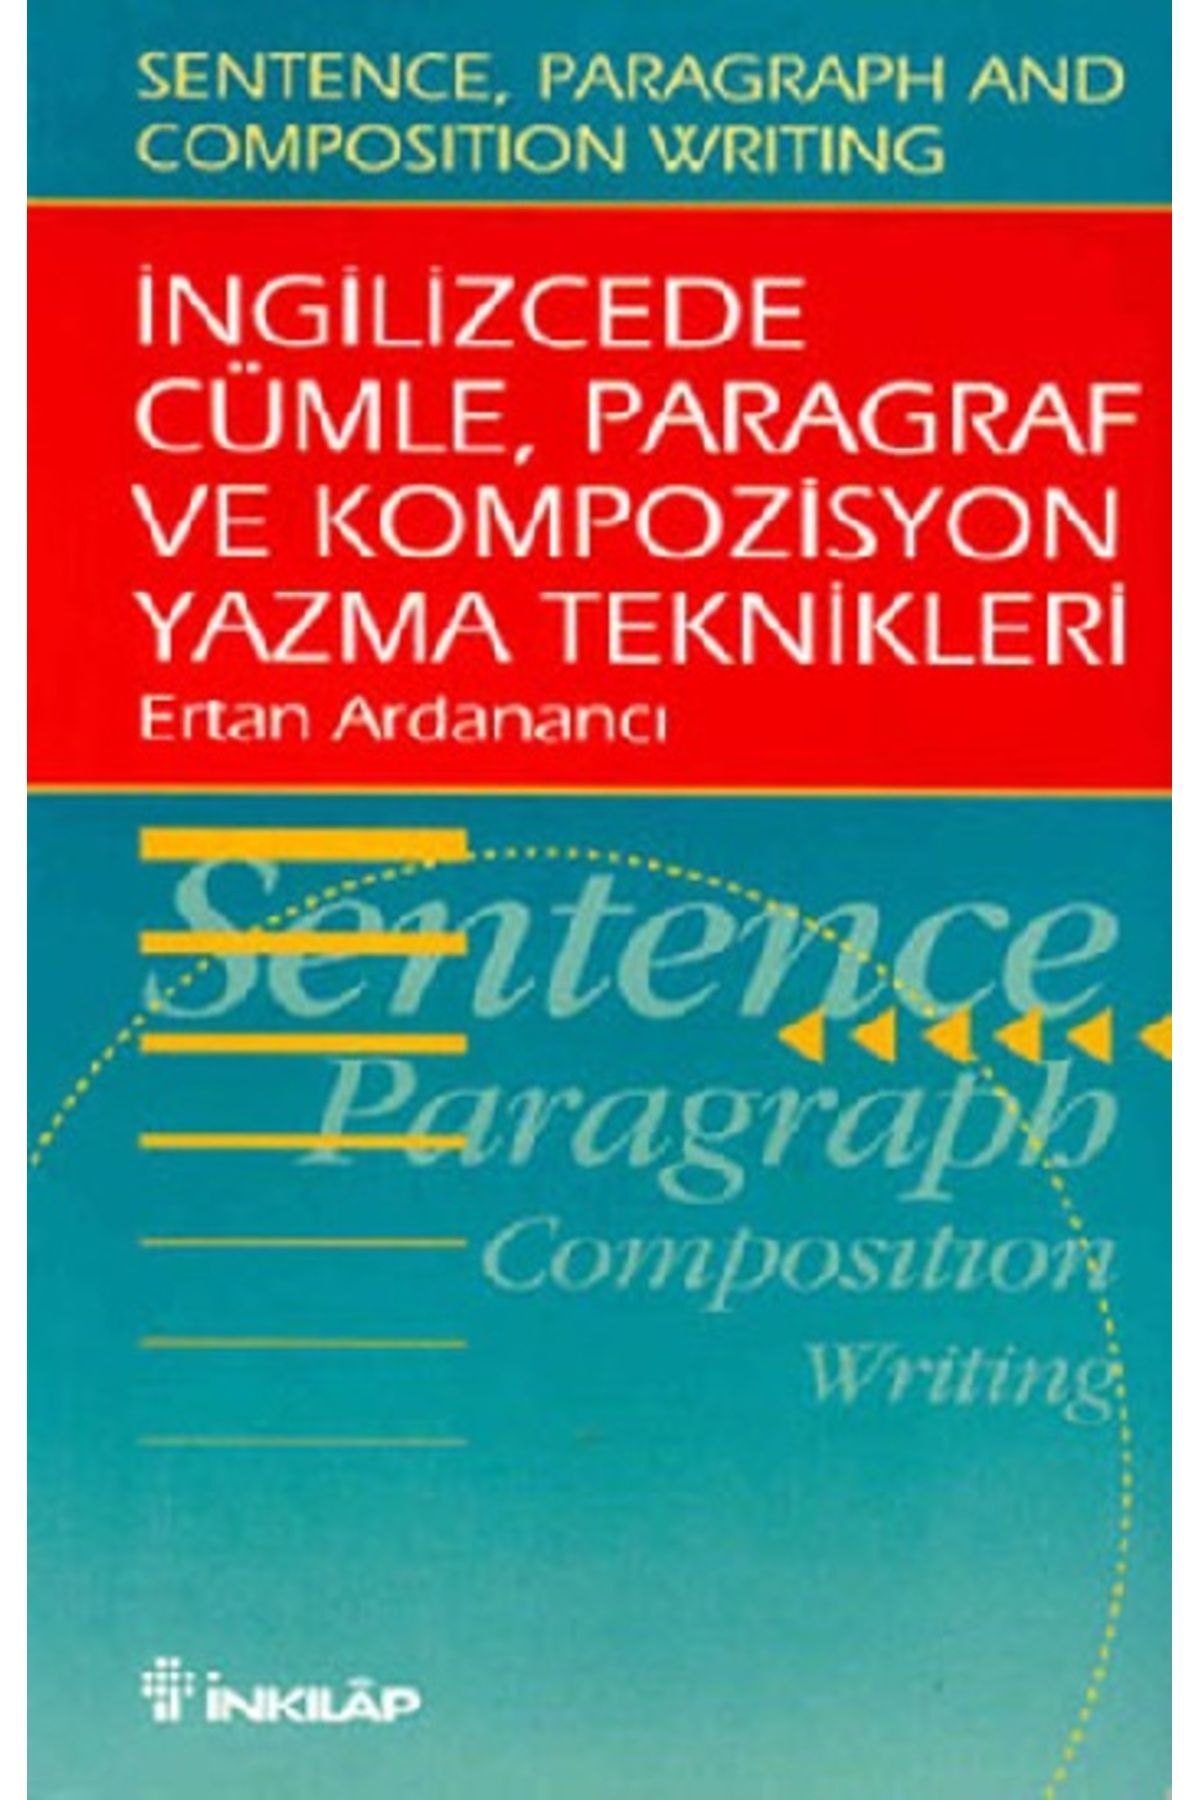 İnkılap Kitabevi Ingilizce'de Cümle, Paragraf Ve Kompozisyon Yazma Teknikleri